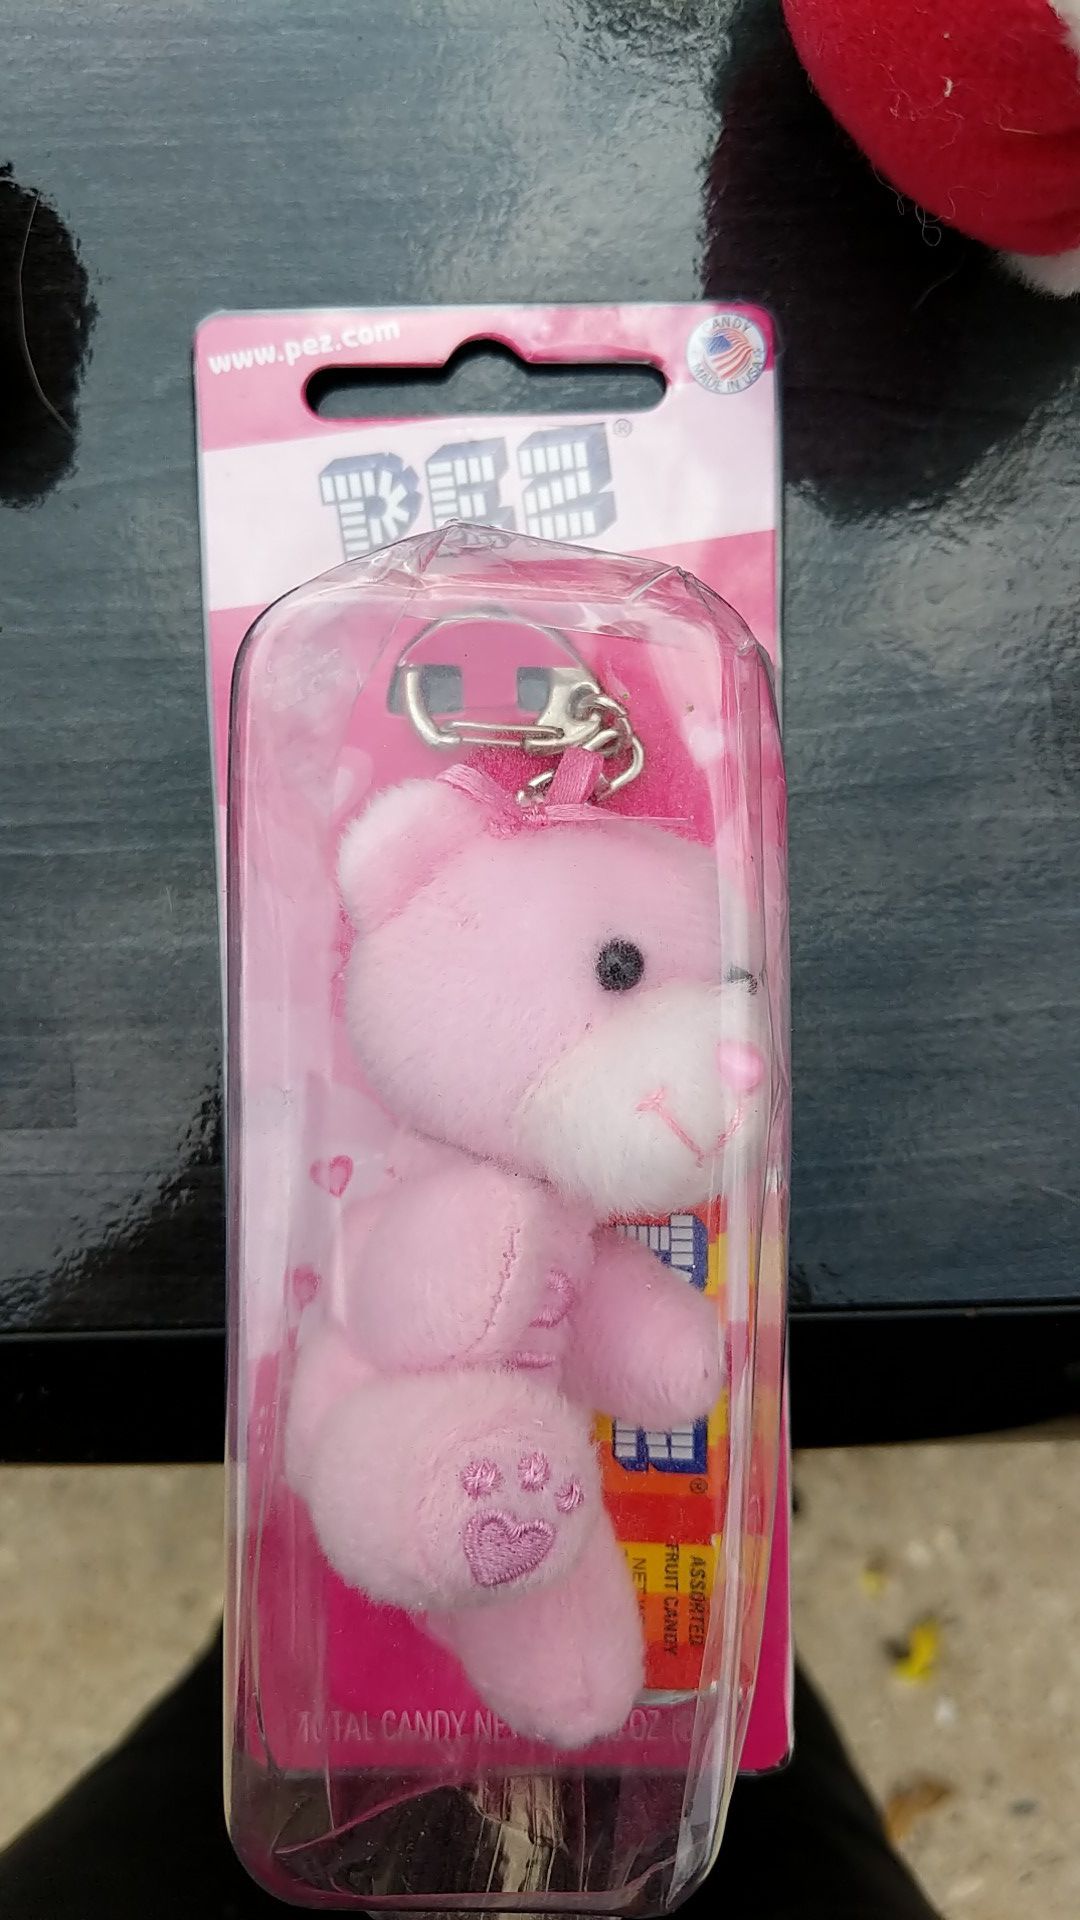 Pez pink teddy bear dispenser